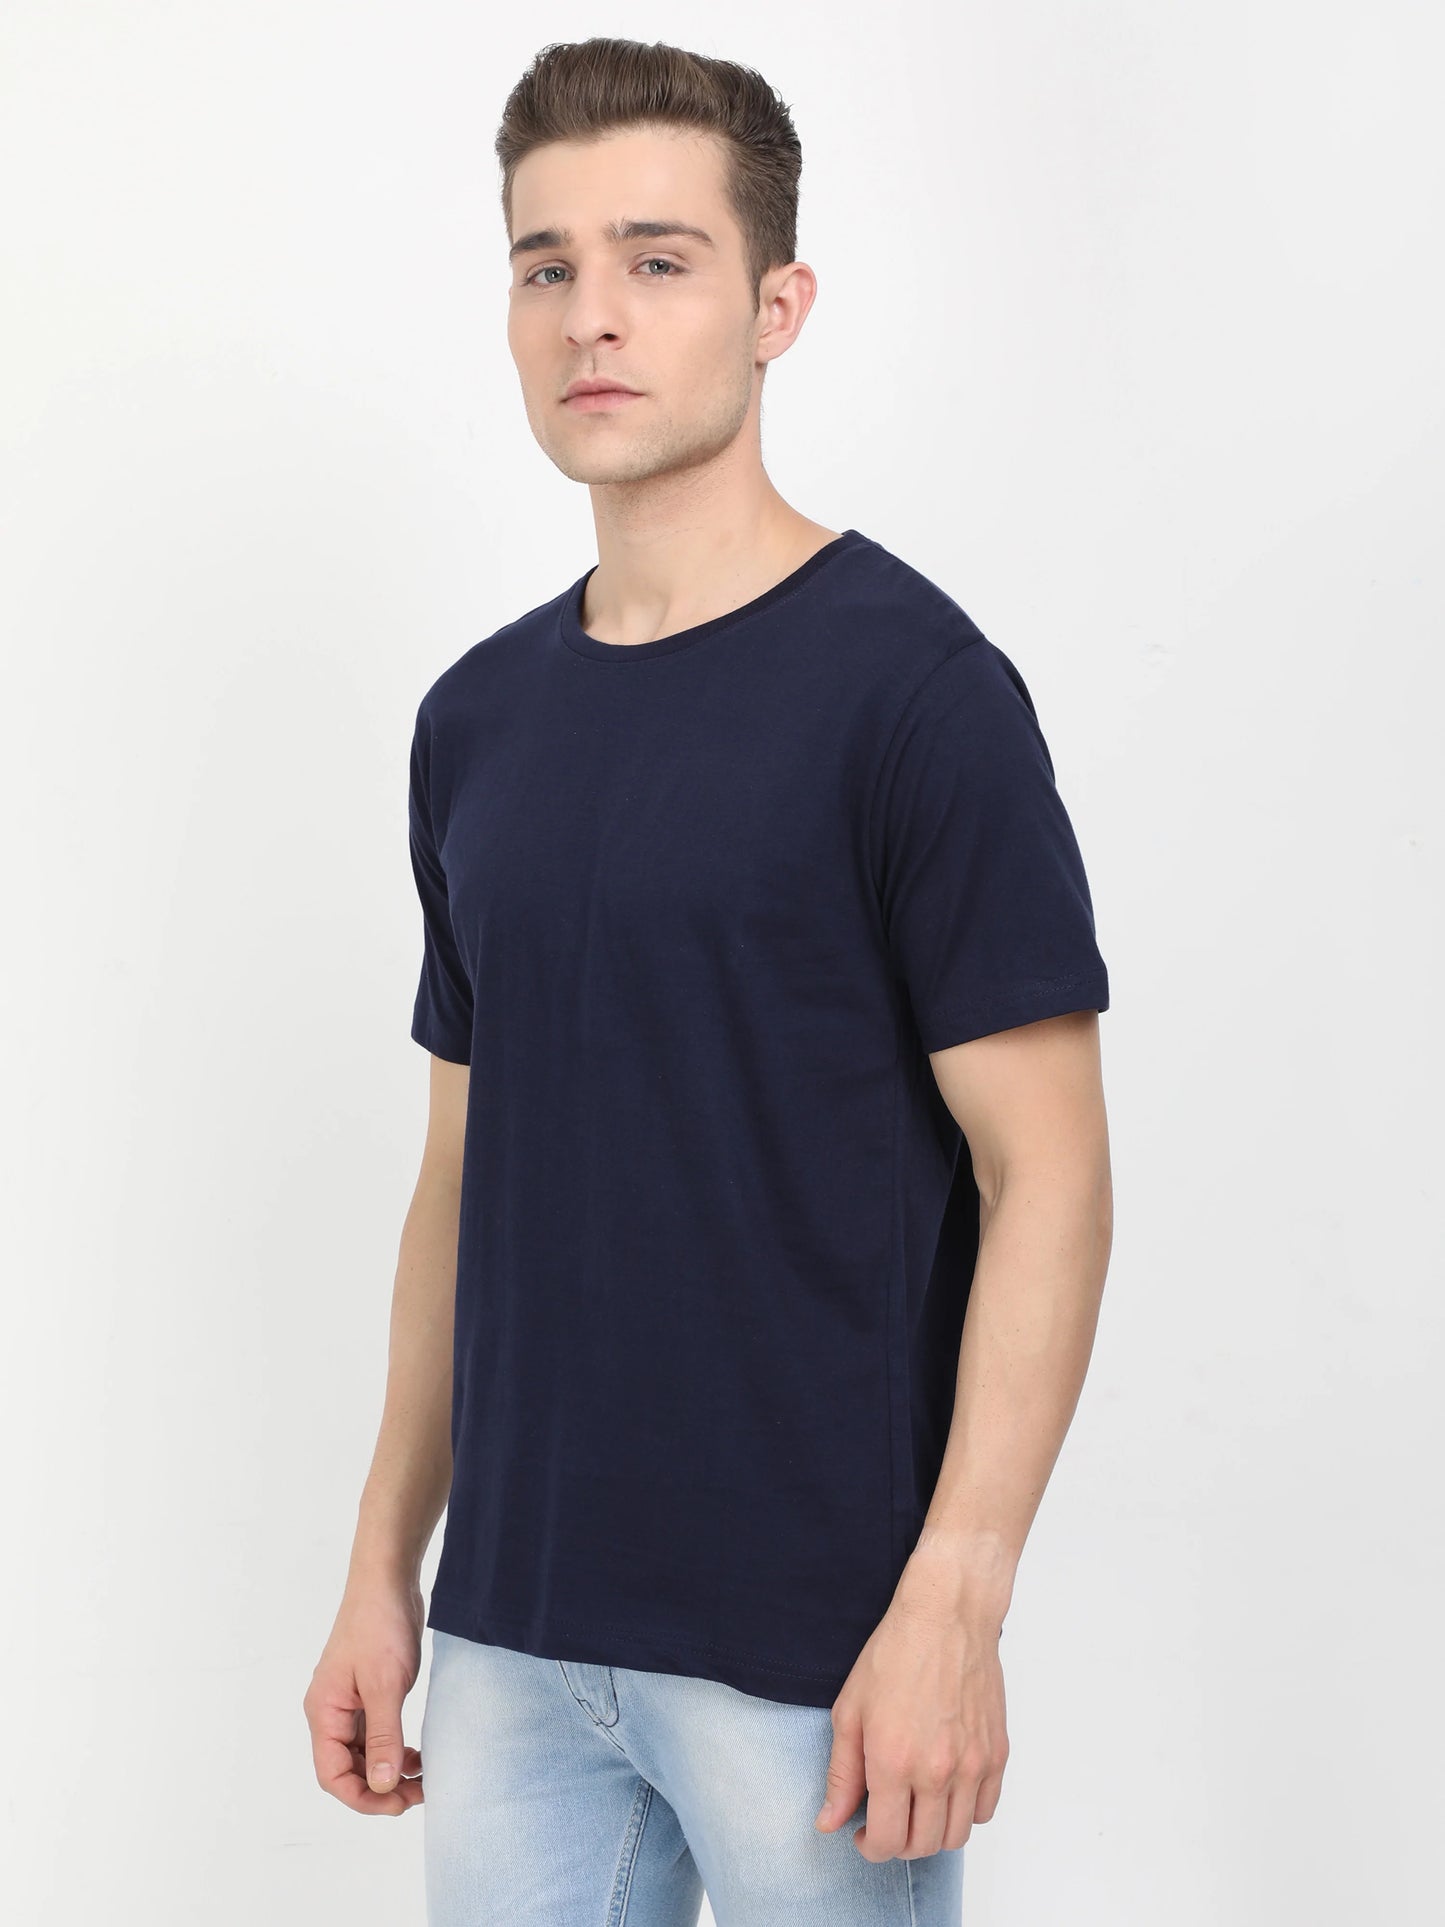 Men's Cotton Plain Round Neck Half Sleeve Navy Blue Color T-Shirt